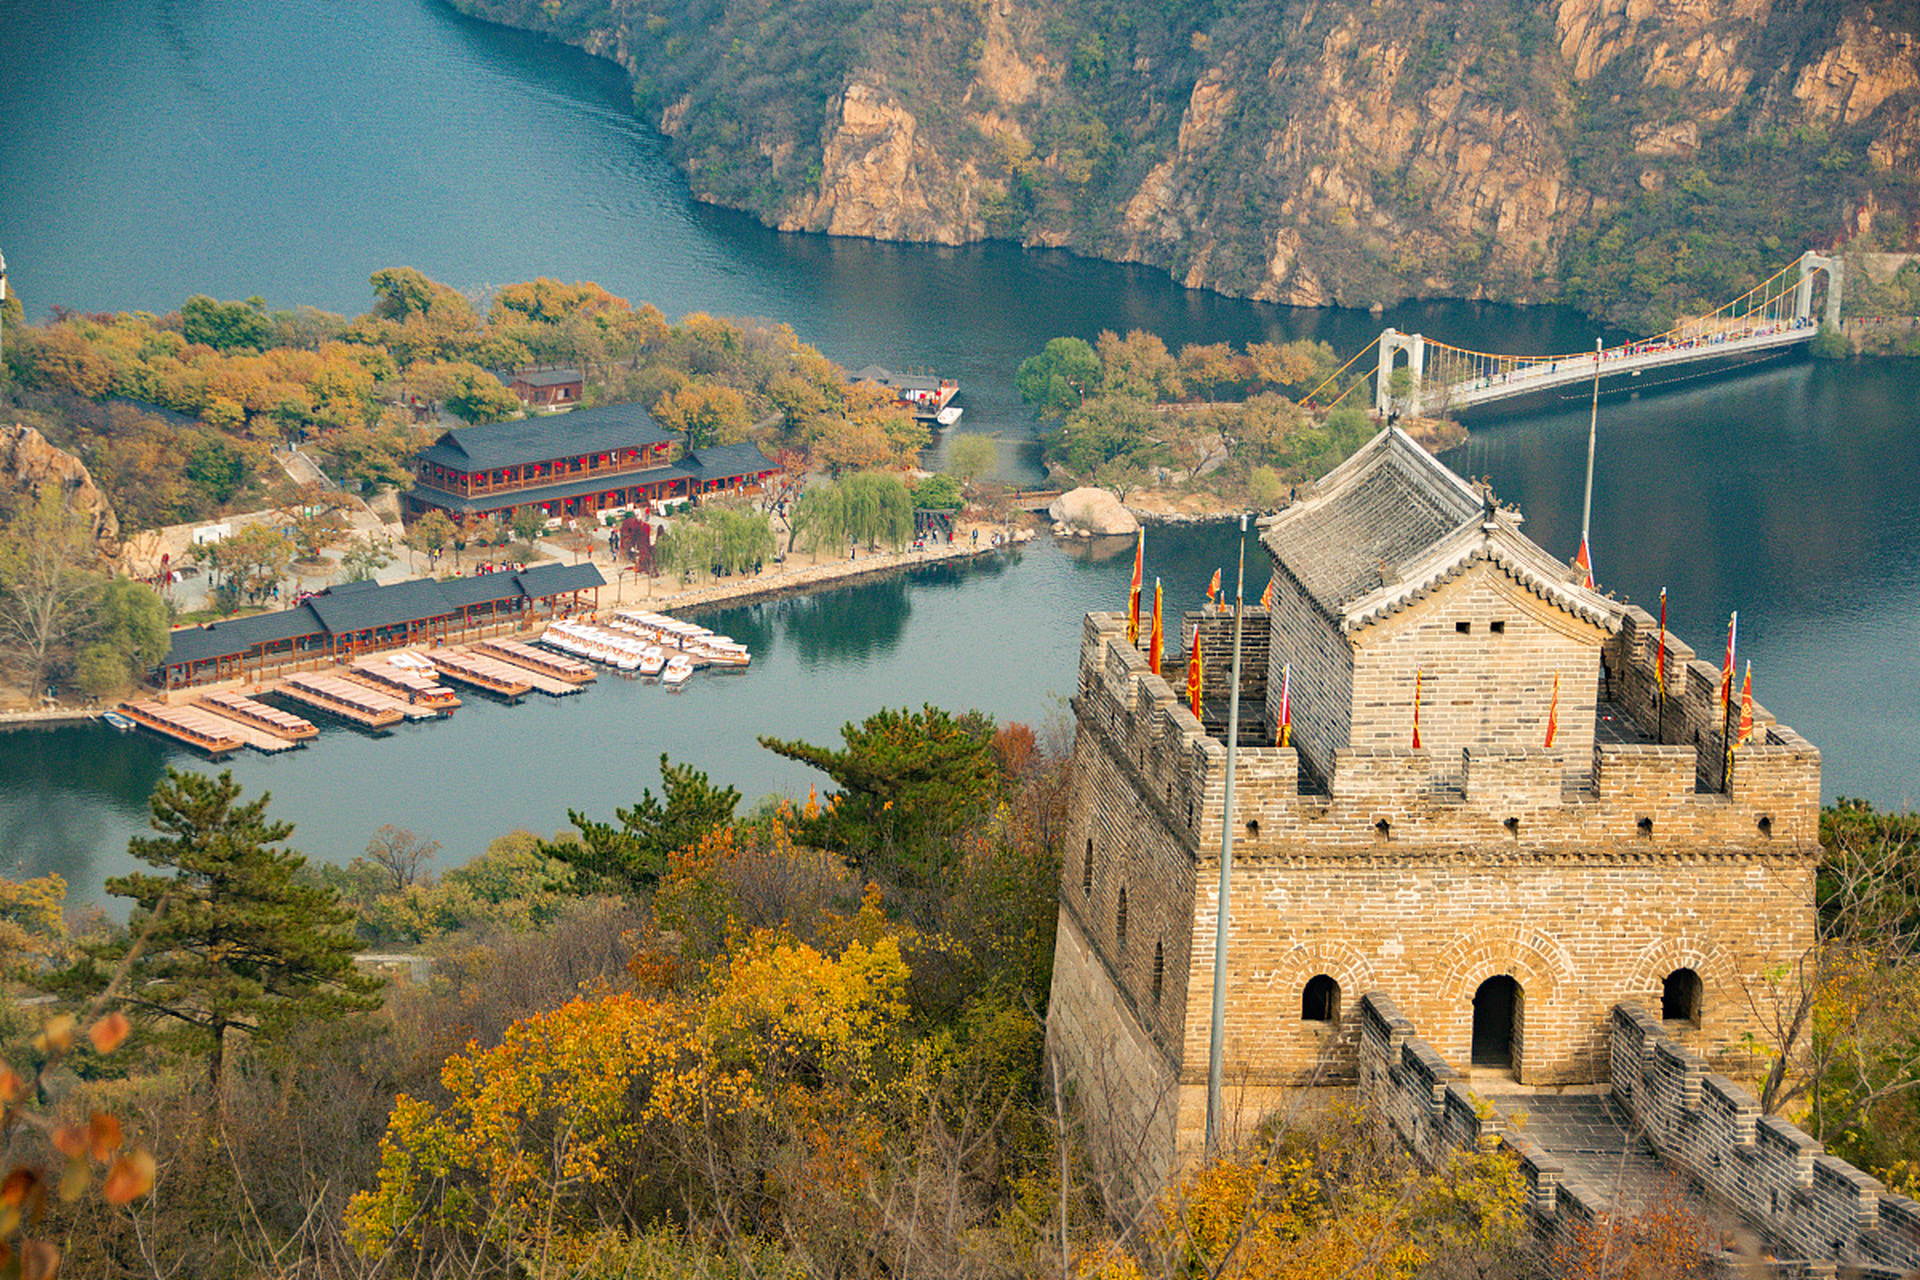 一座以山川水域风光为主的大型旅游景区,座落于北京市怀柔区九渡河镇